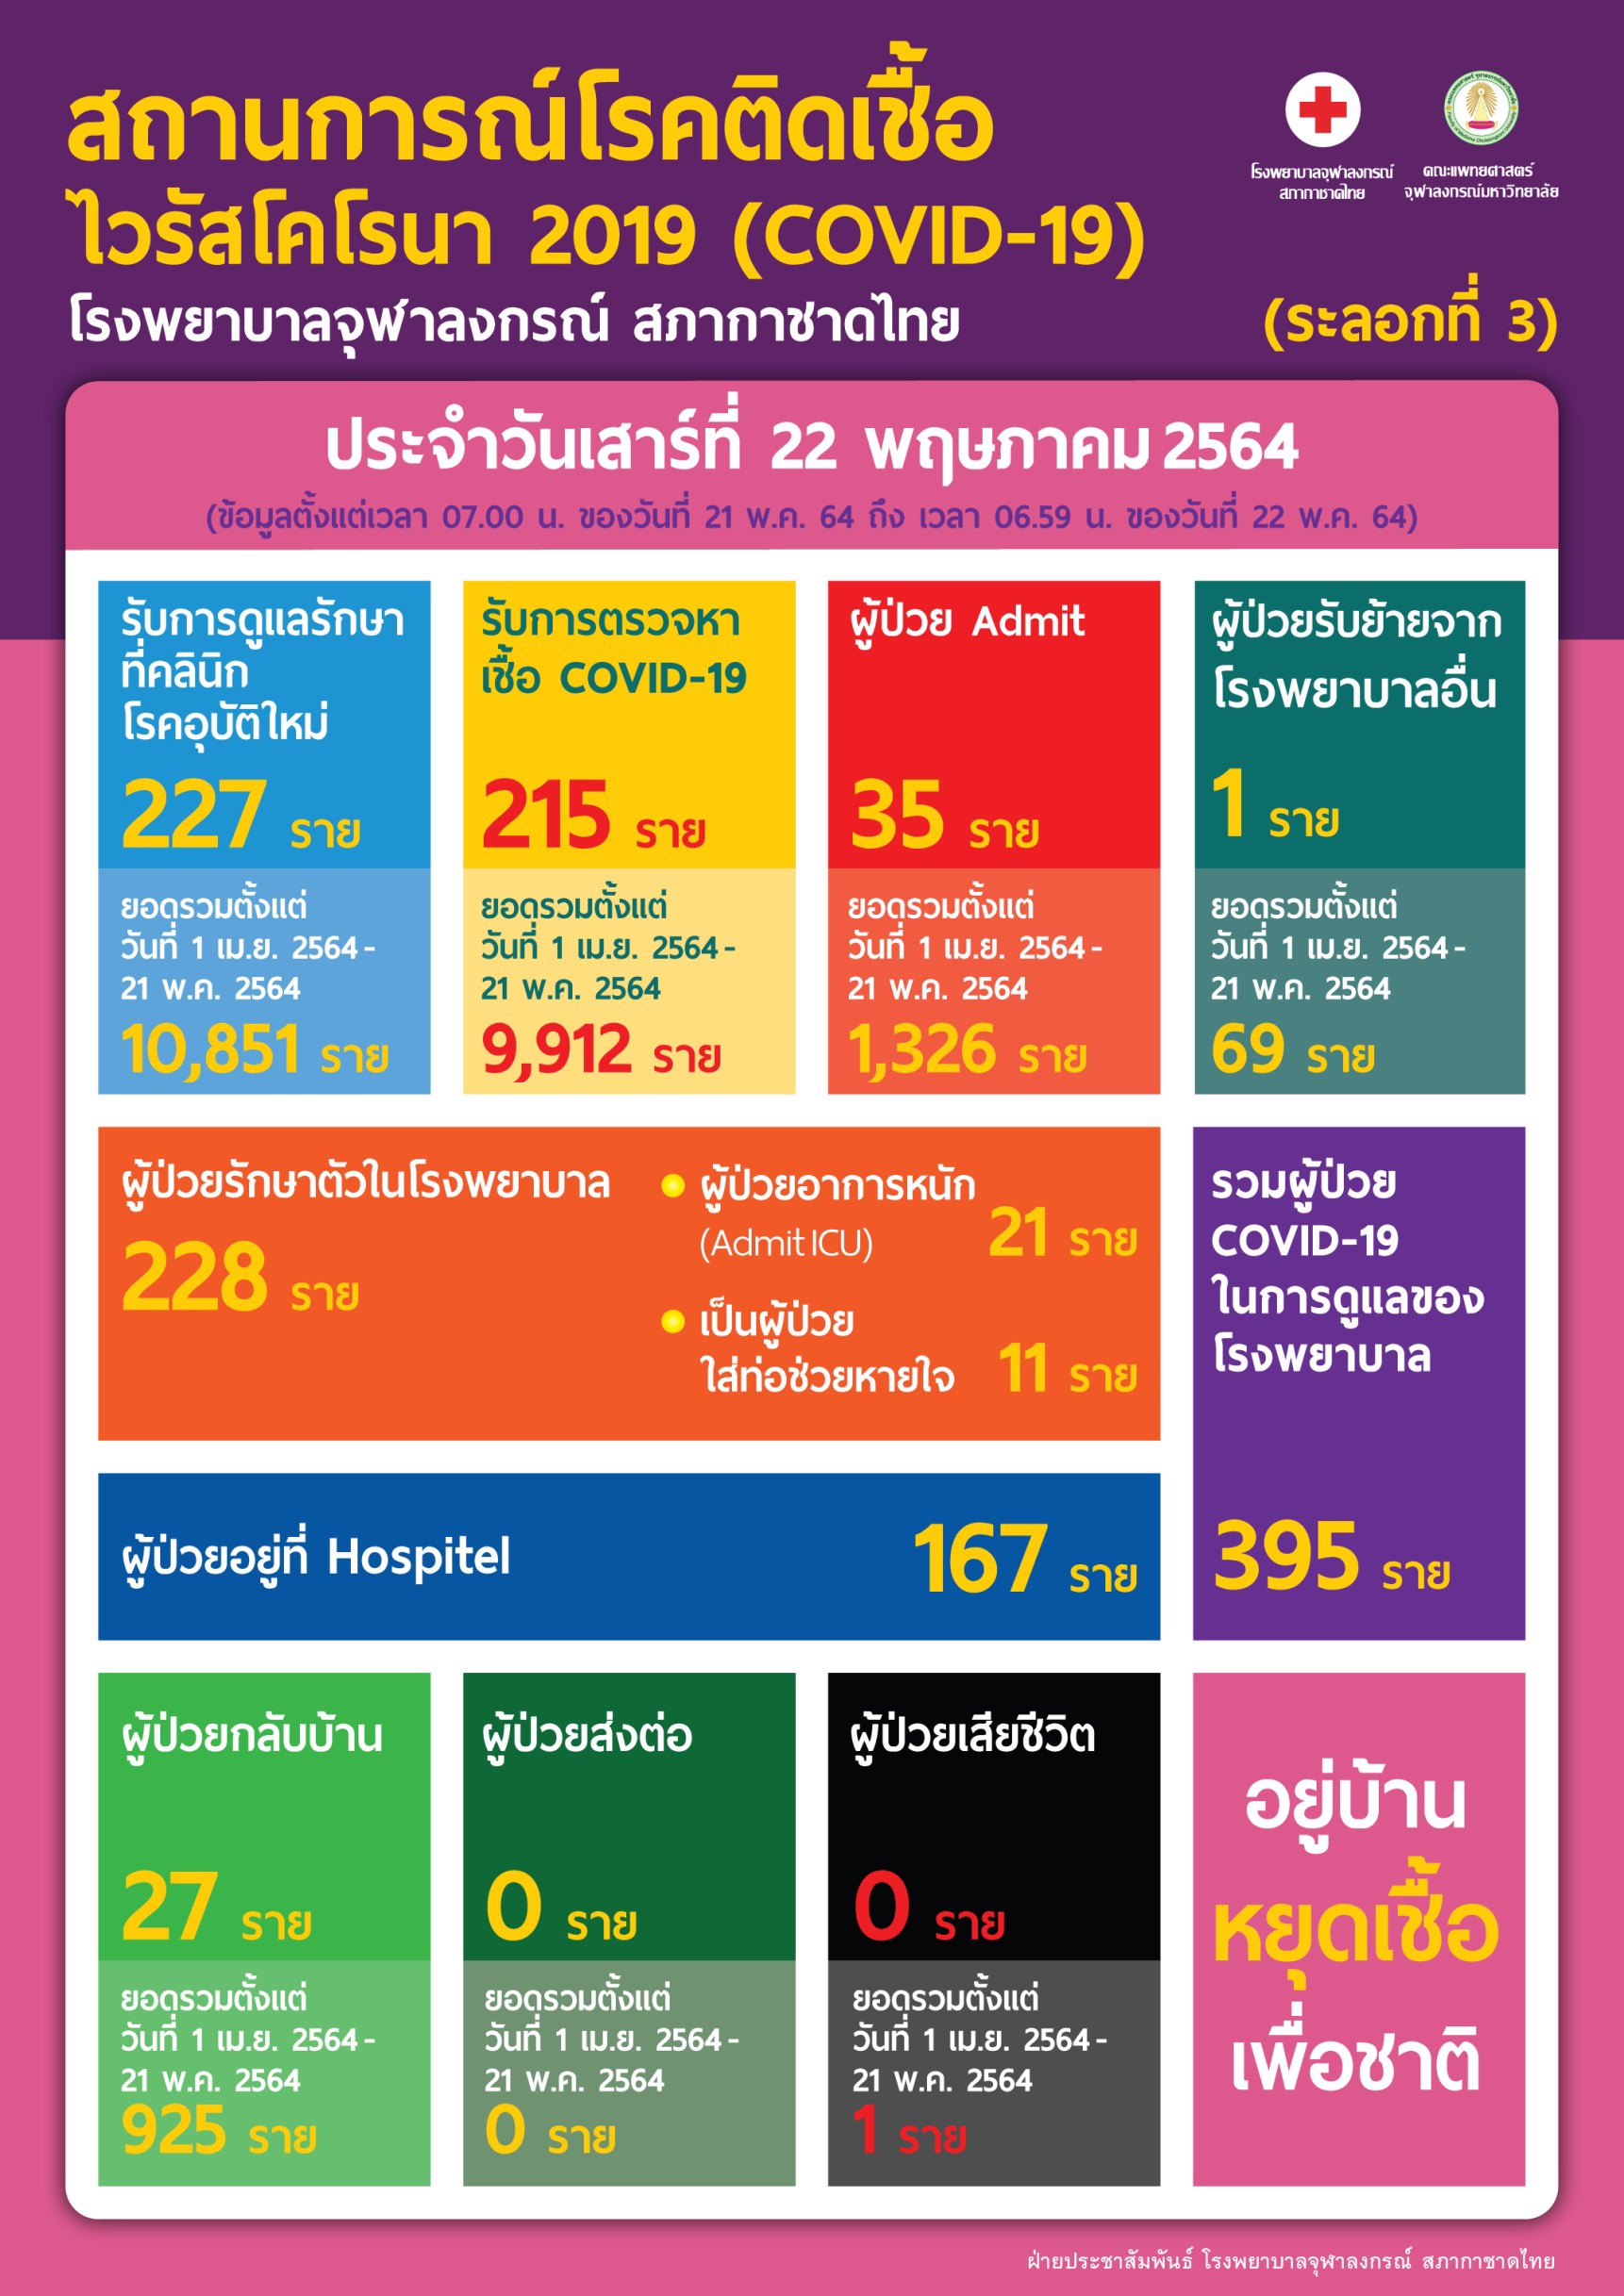 สถานการณ์โรคติดเชื้อ ไวรัสโคโรนา 2019 (COVID-19) (ระลอกที่ 3) โรงพยาบาลจุฬาลงกรณ์ สภากาชาดไทย  ประจำวันเสาร์ที่ 22 พฤษภาคม 2564